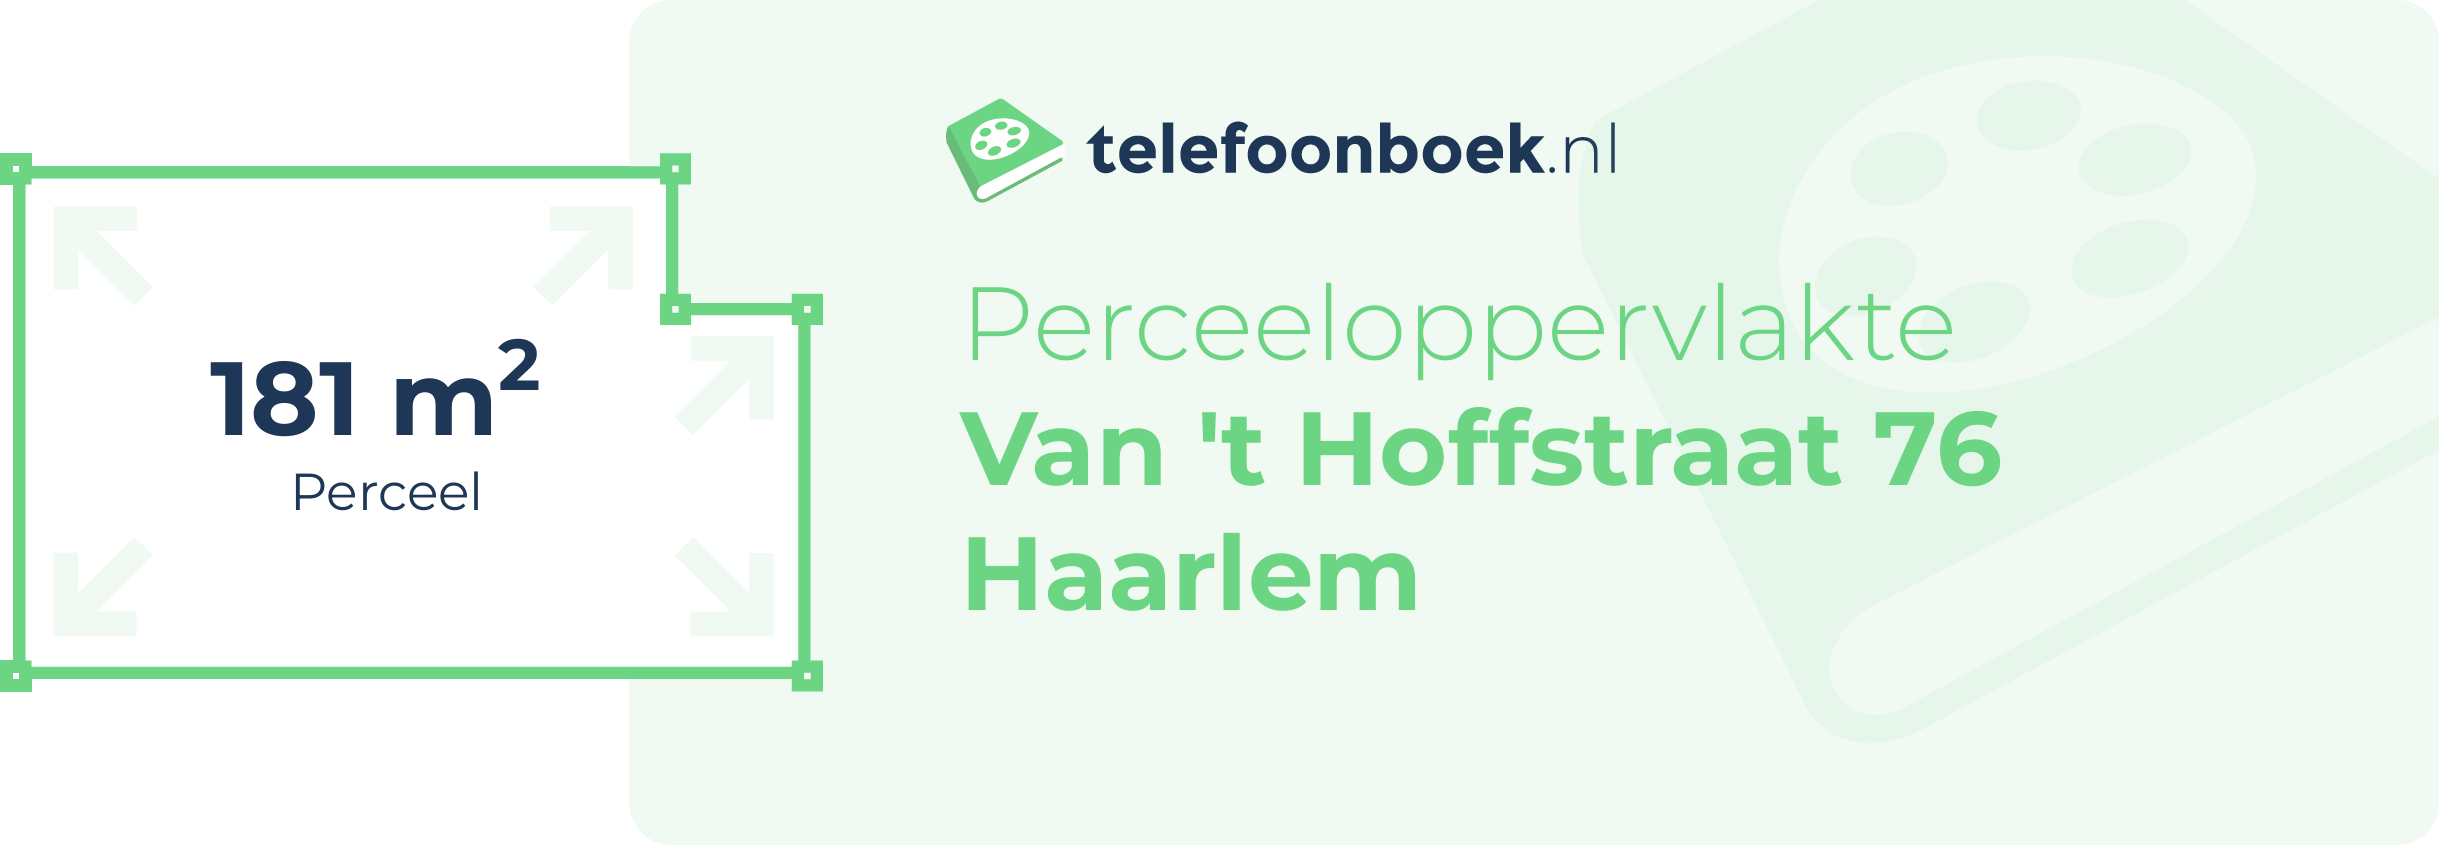 Perceeloppervlakte Van 't Hoffstraat 76 Haarlem